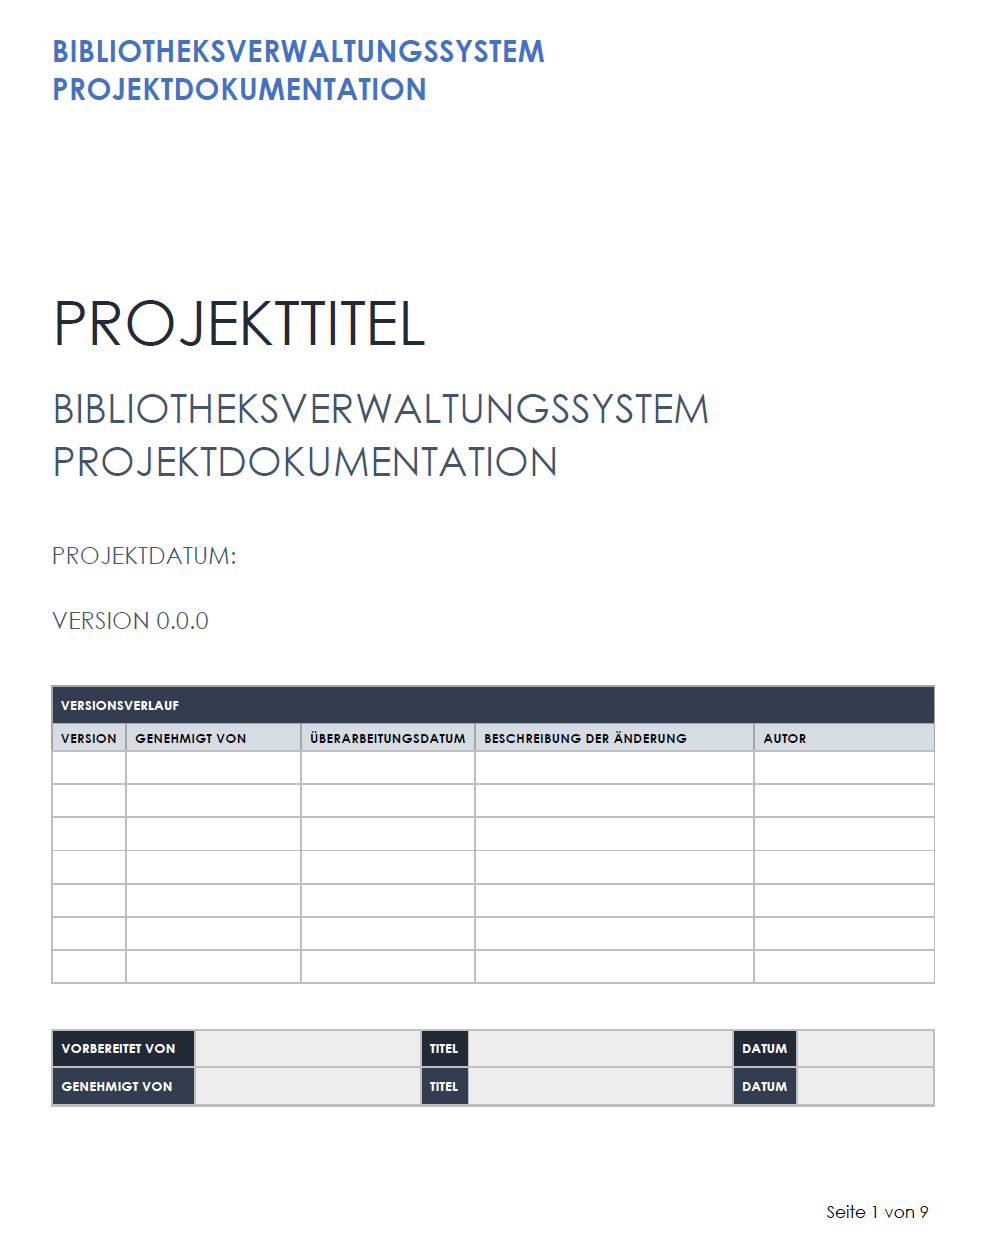  Vorlage für die Projektdokumentation eines Bibliotheksverwaltungssystems